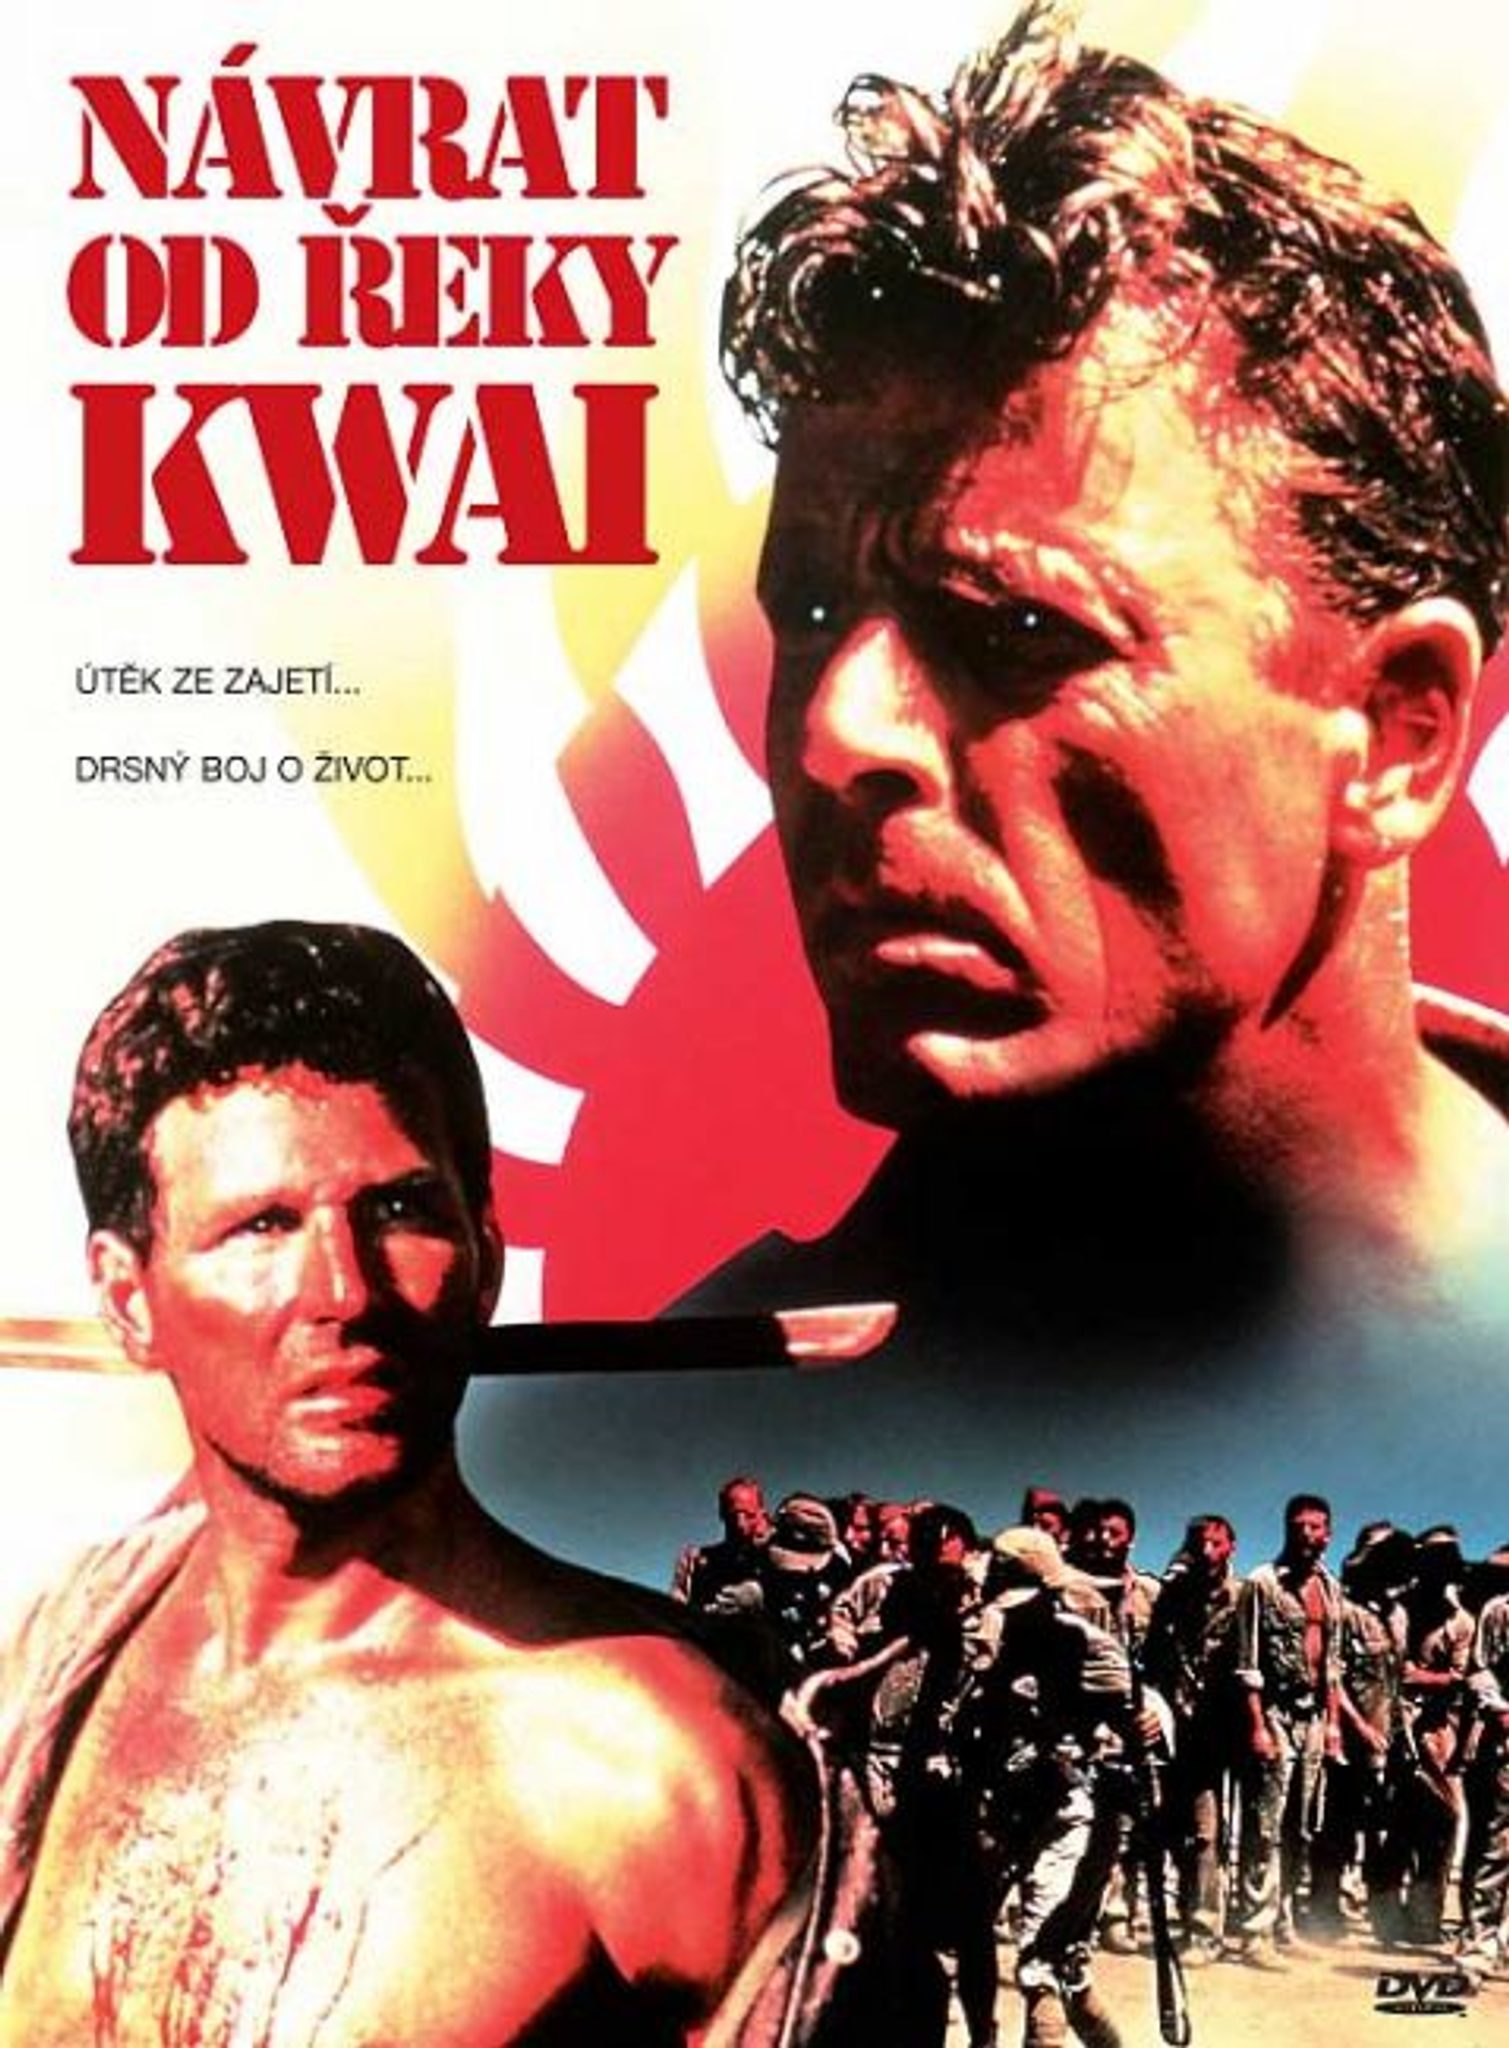 DVD Nvrat od eky Kwai - Kliknutm na obrzek zavete